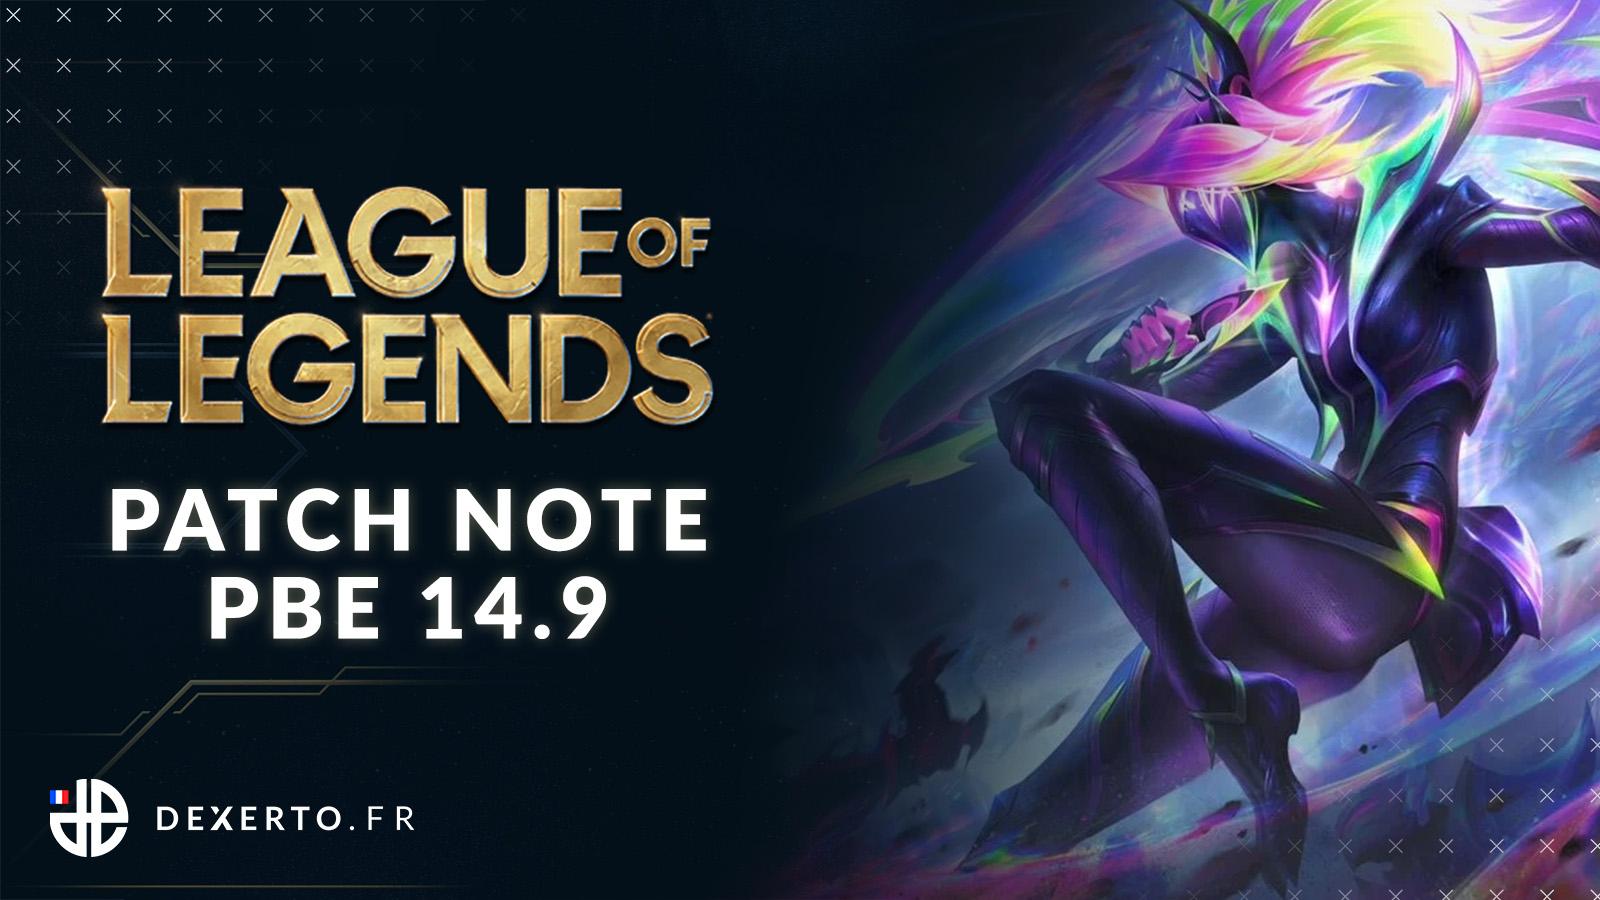 Patch note PBE 14.9 de League of Legends